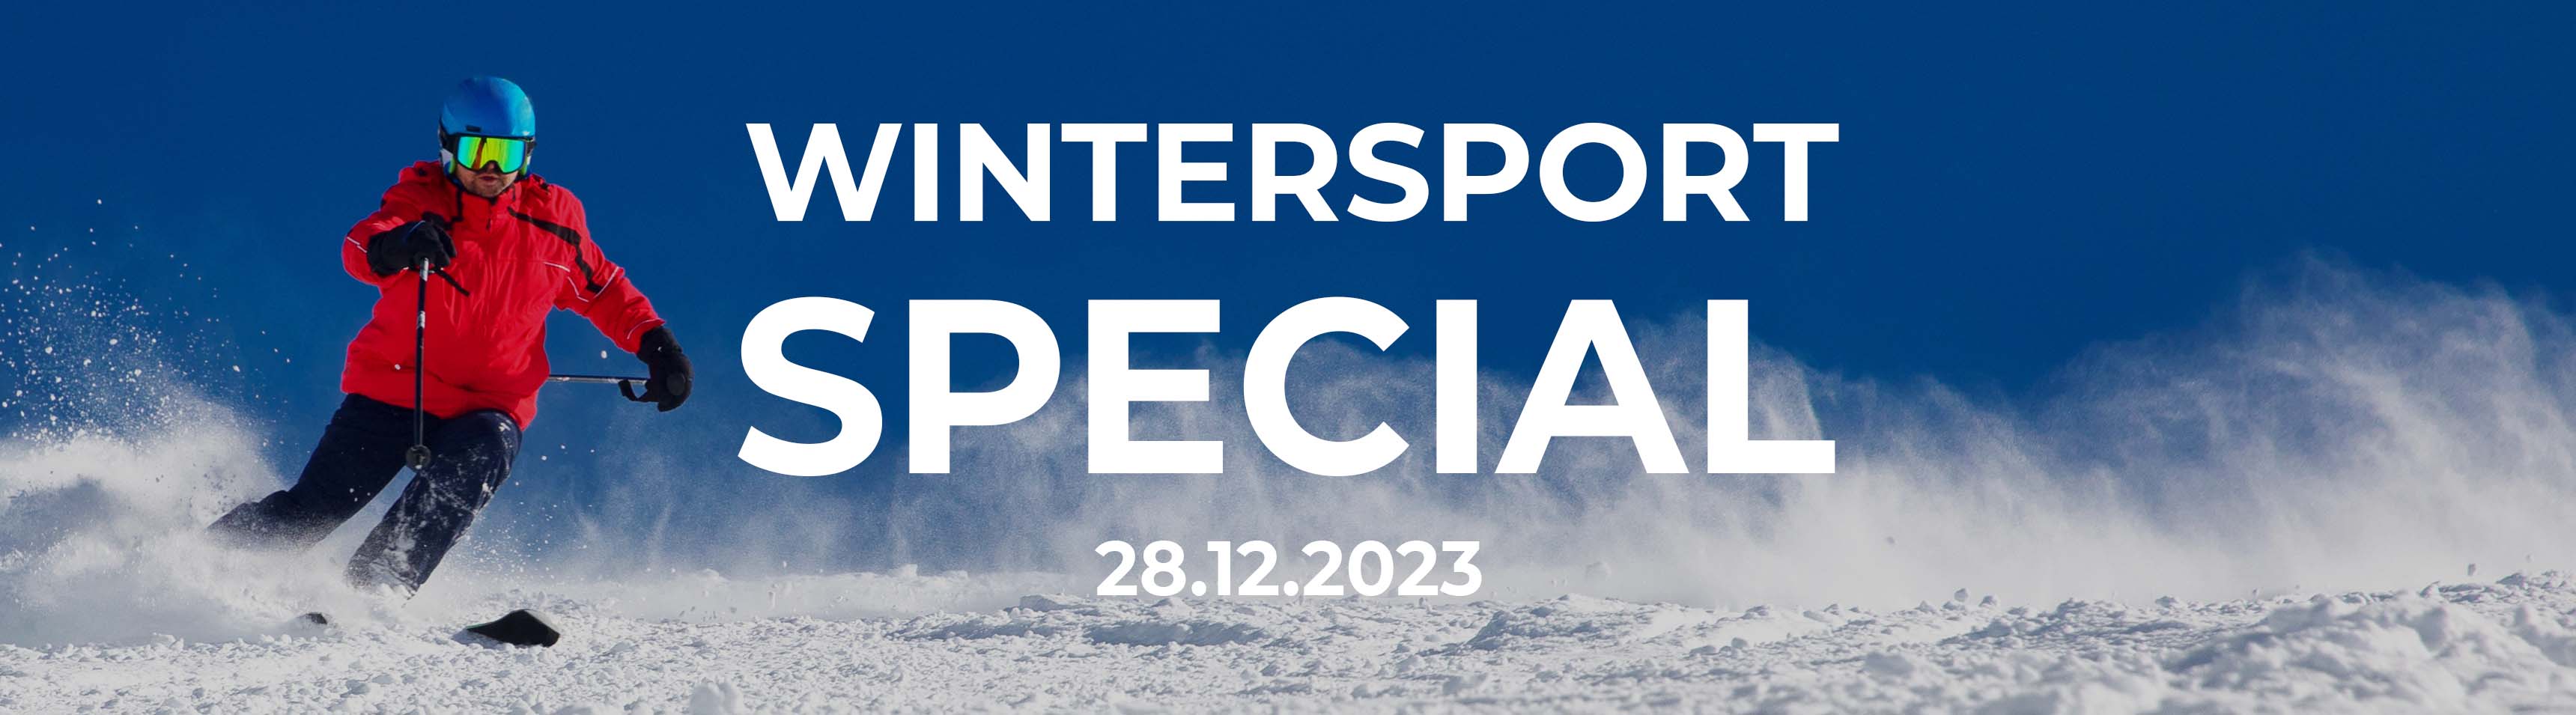 Wintersport-Special bei DayDeal.ch